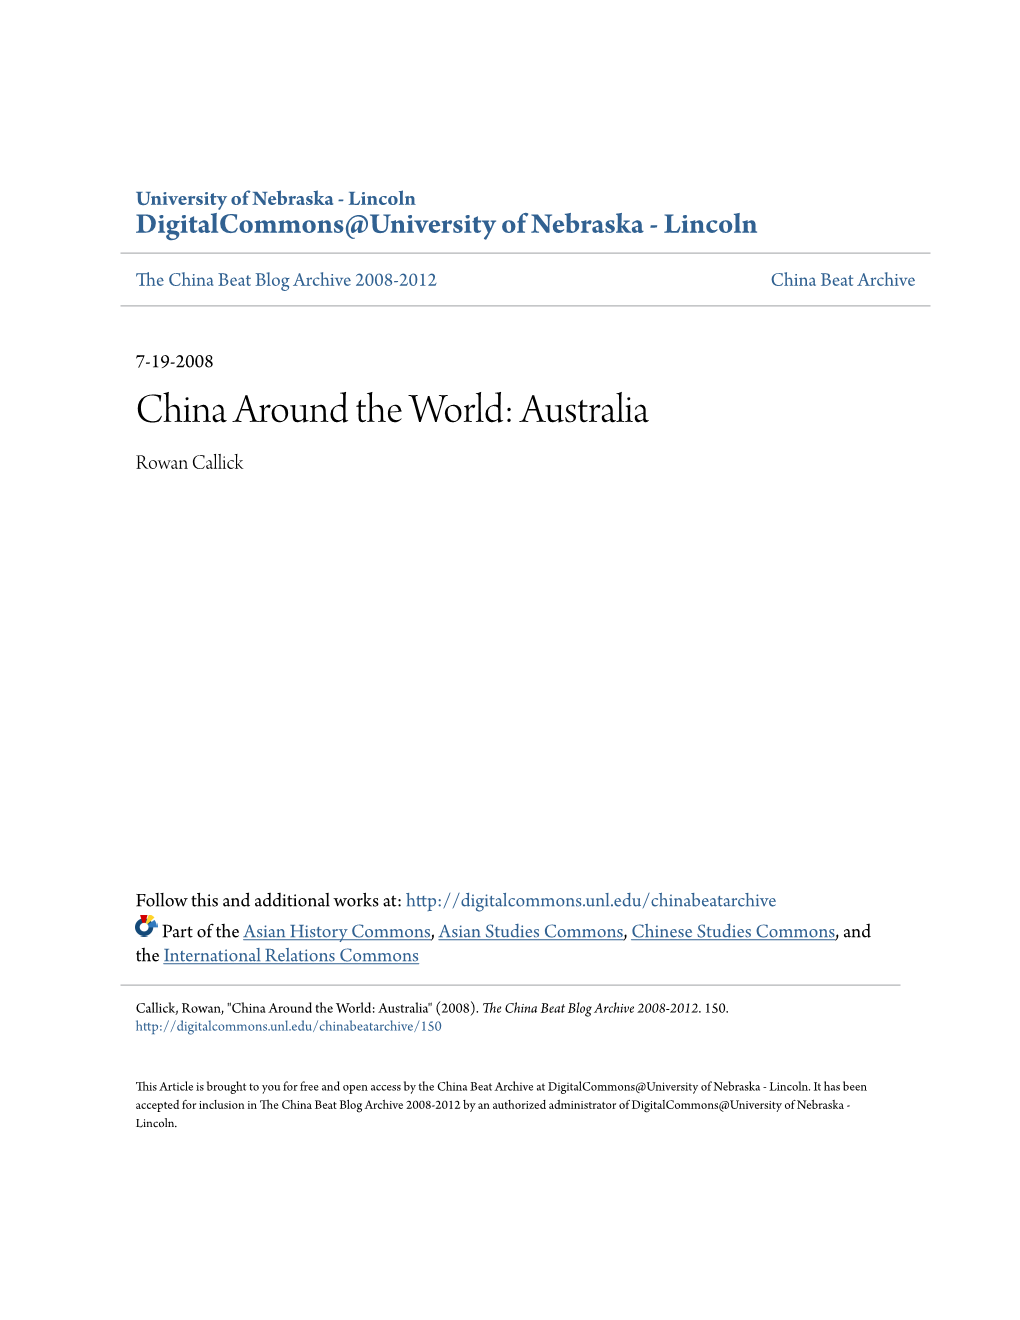 China Around the World: Australia Rowan Callick